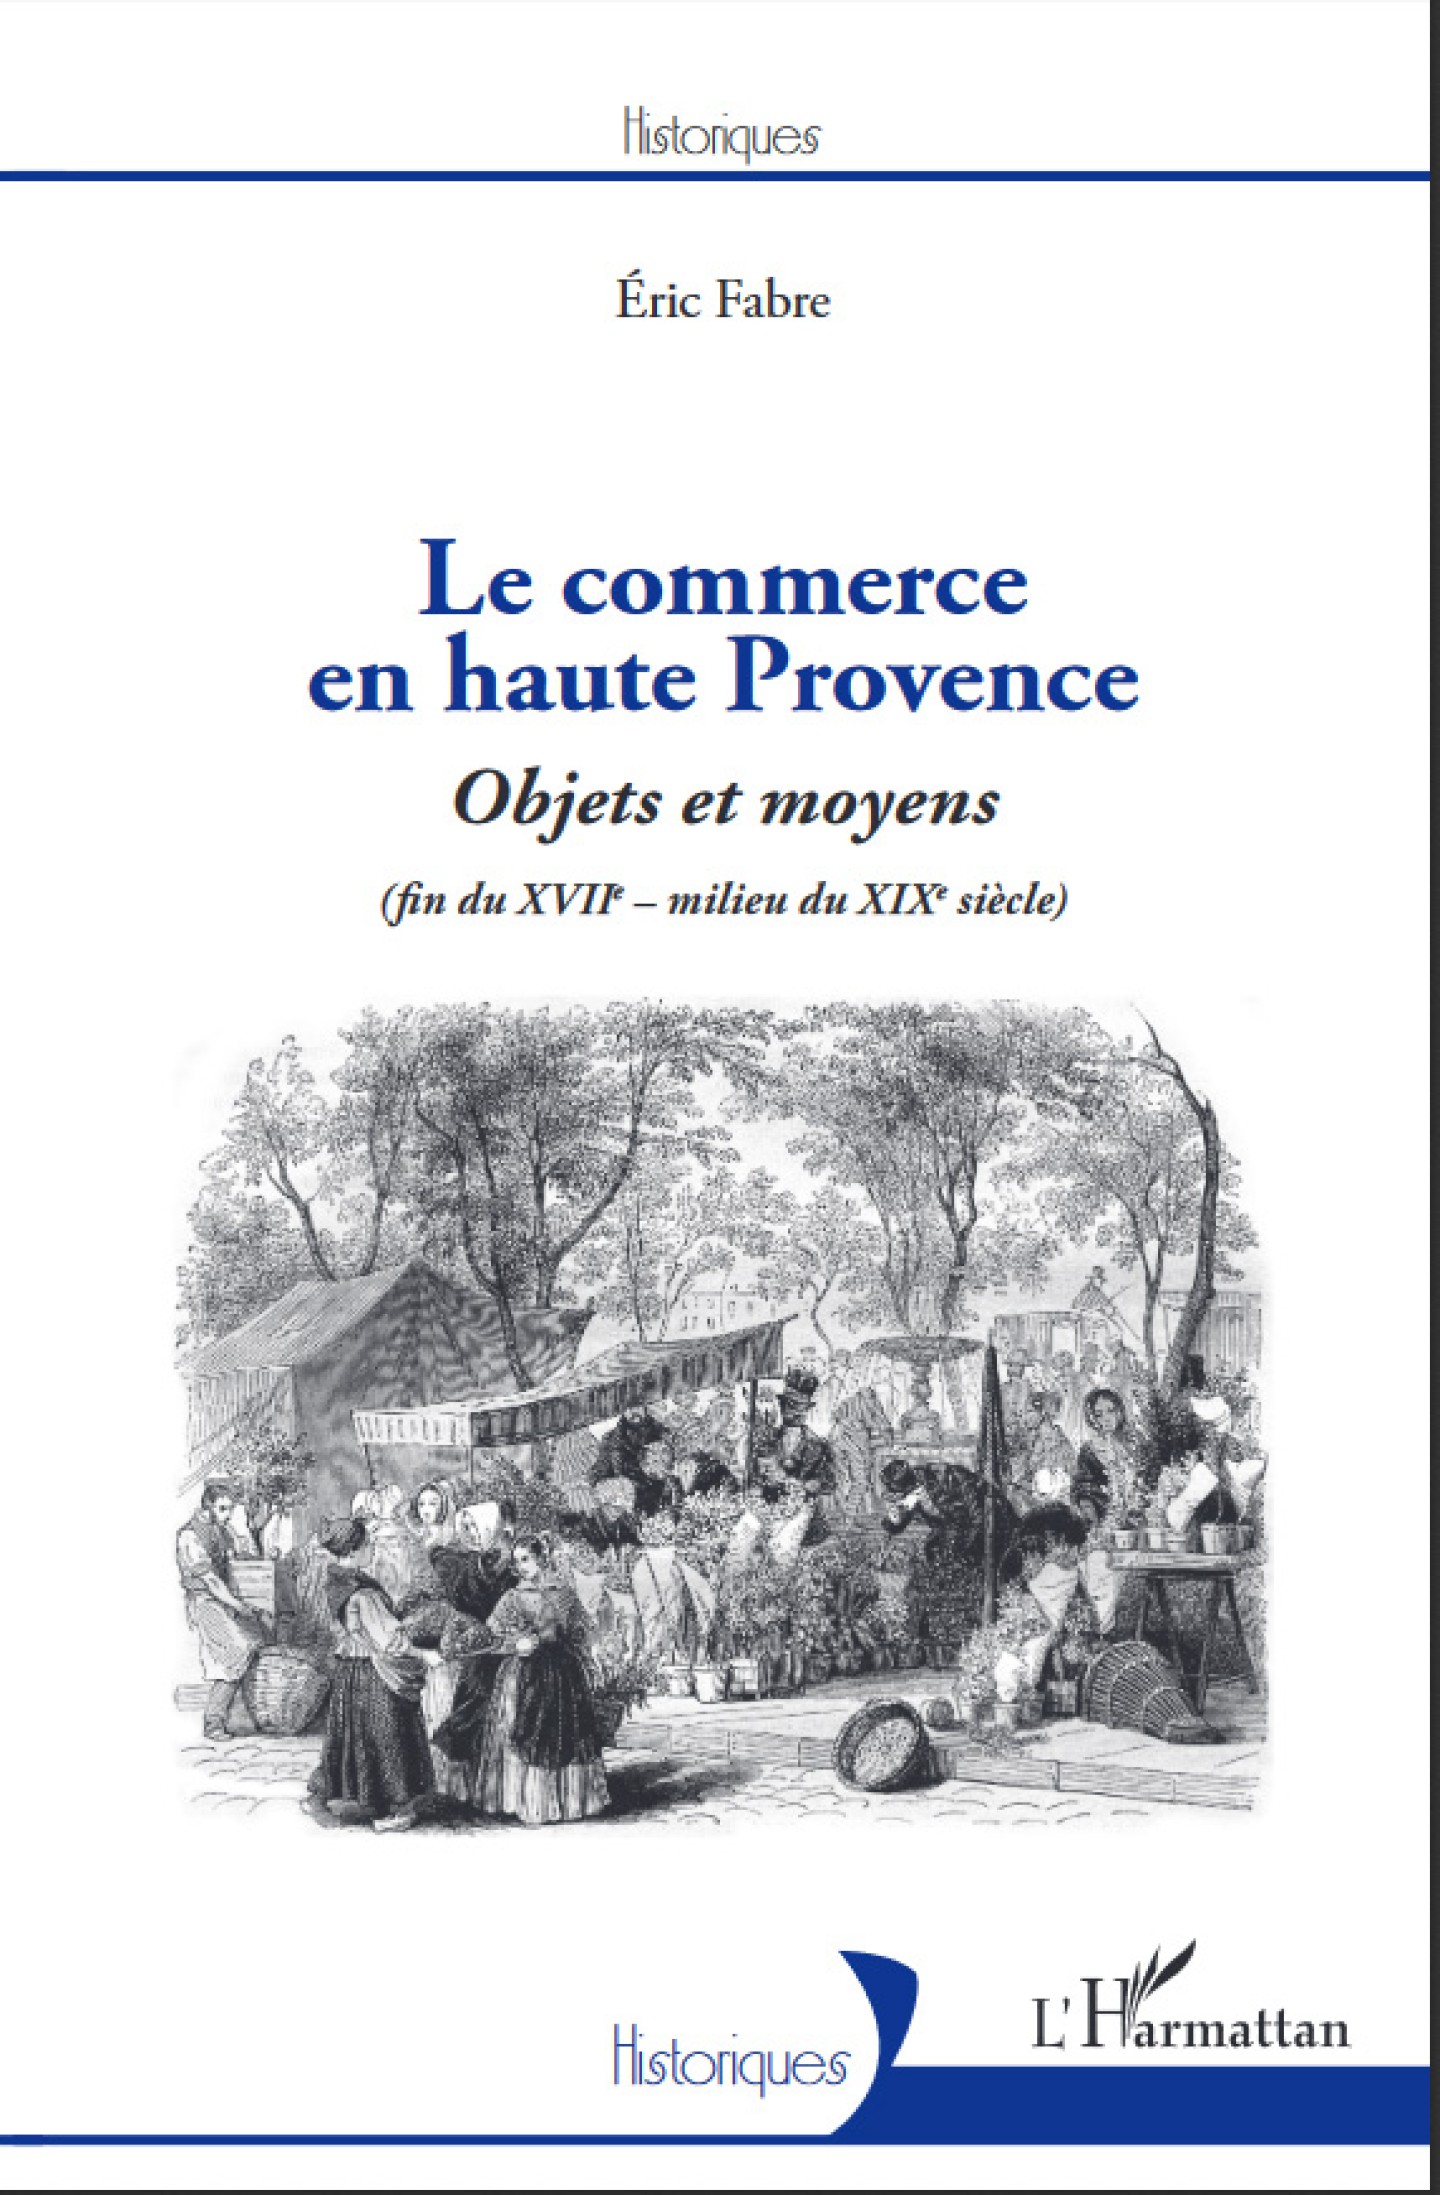 Le commerce en haute Provence de Eric Fabre